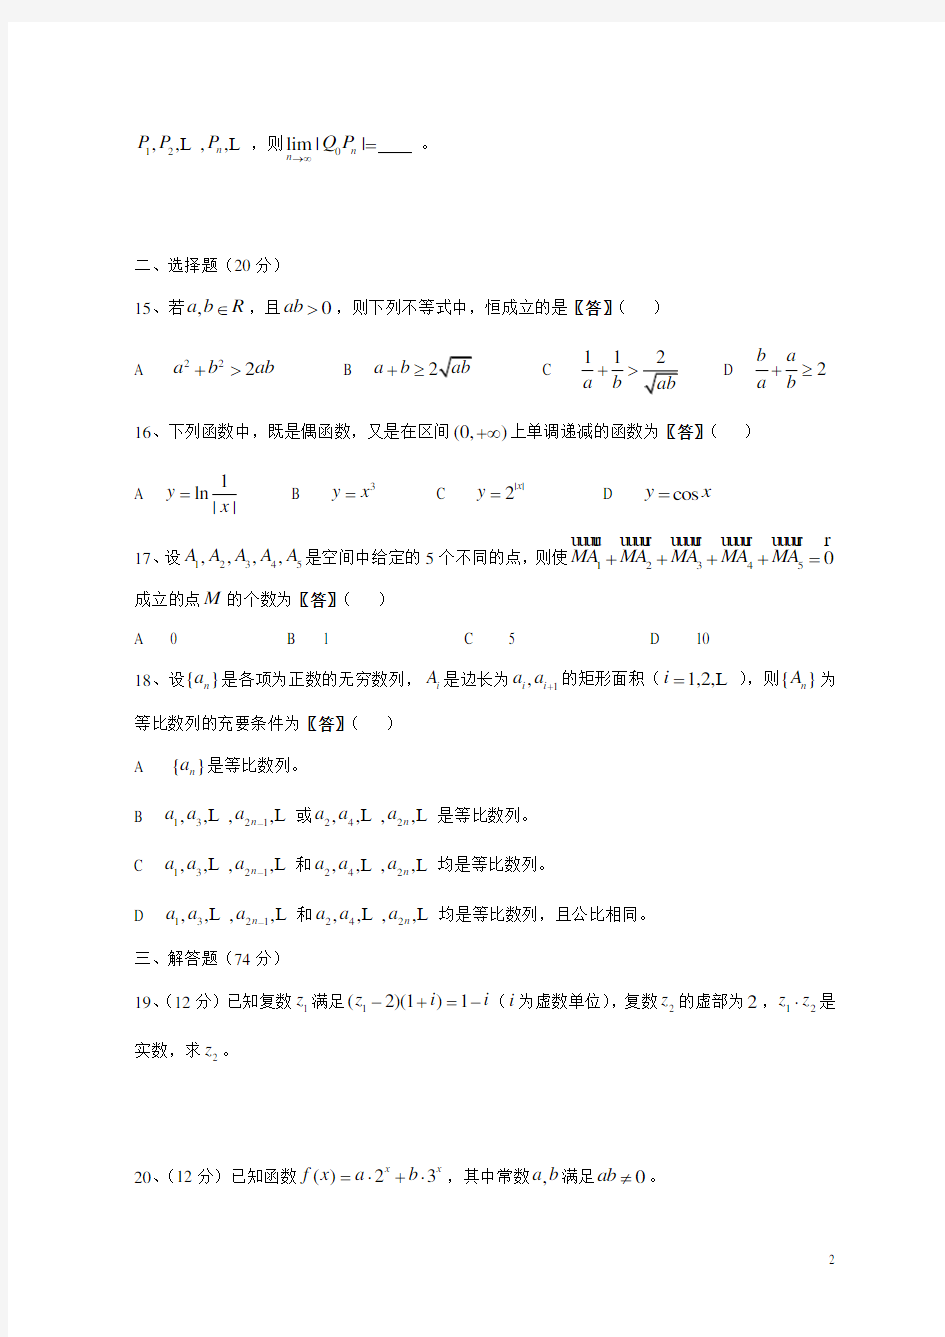 2011年全国高考理科数学试题及答案-上海